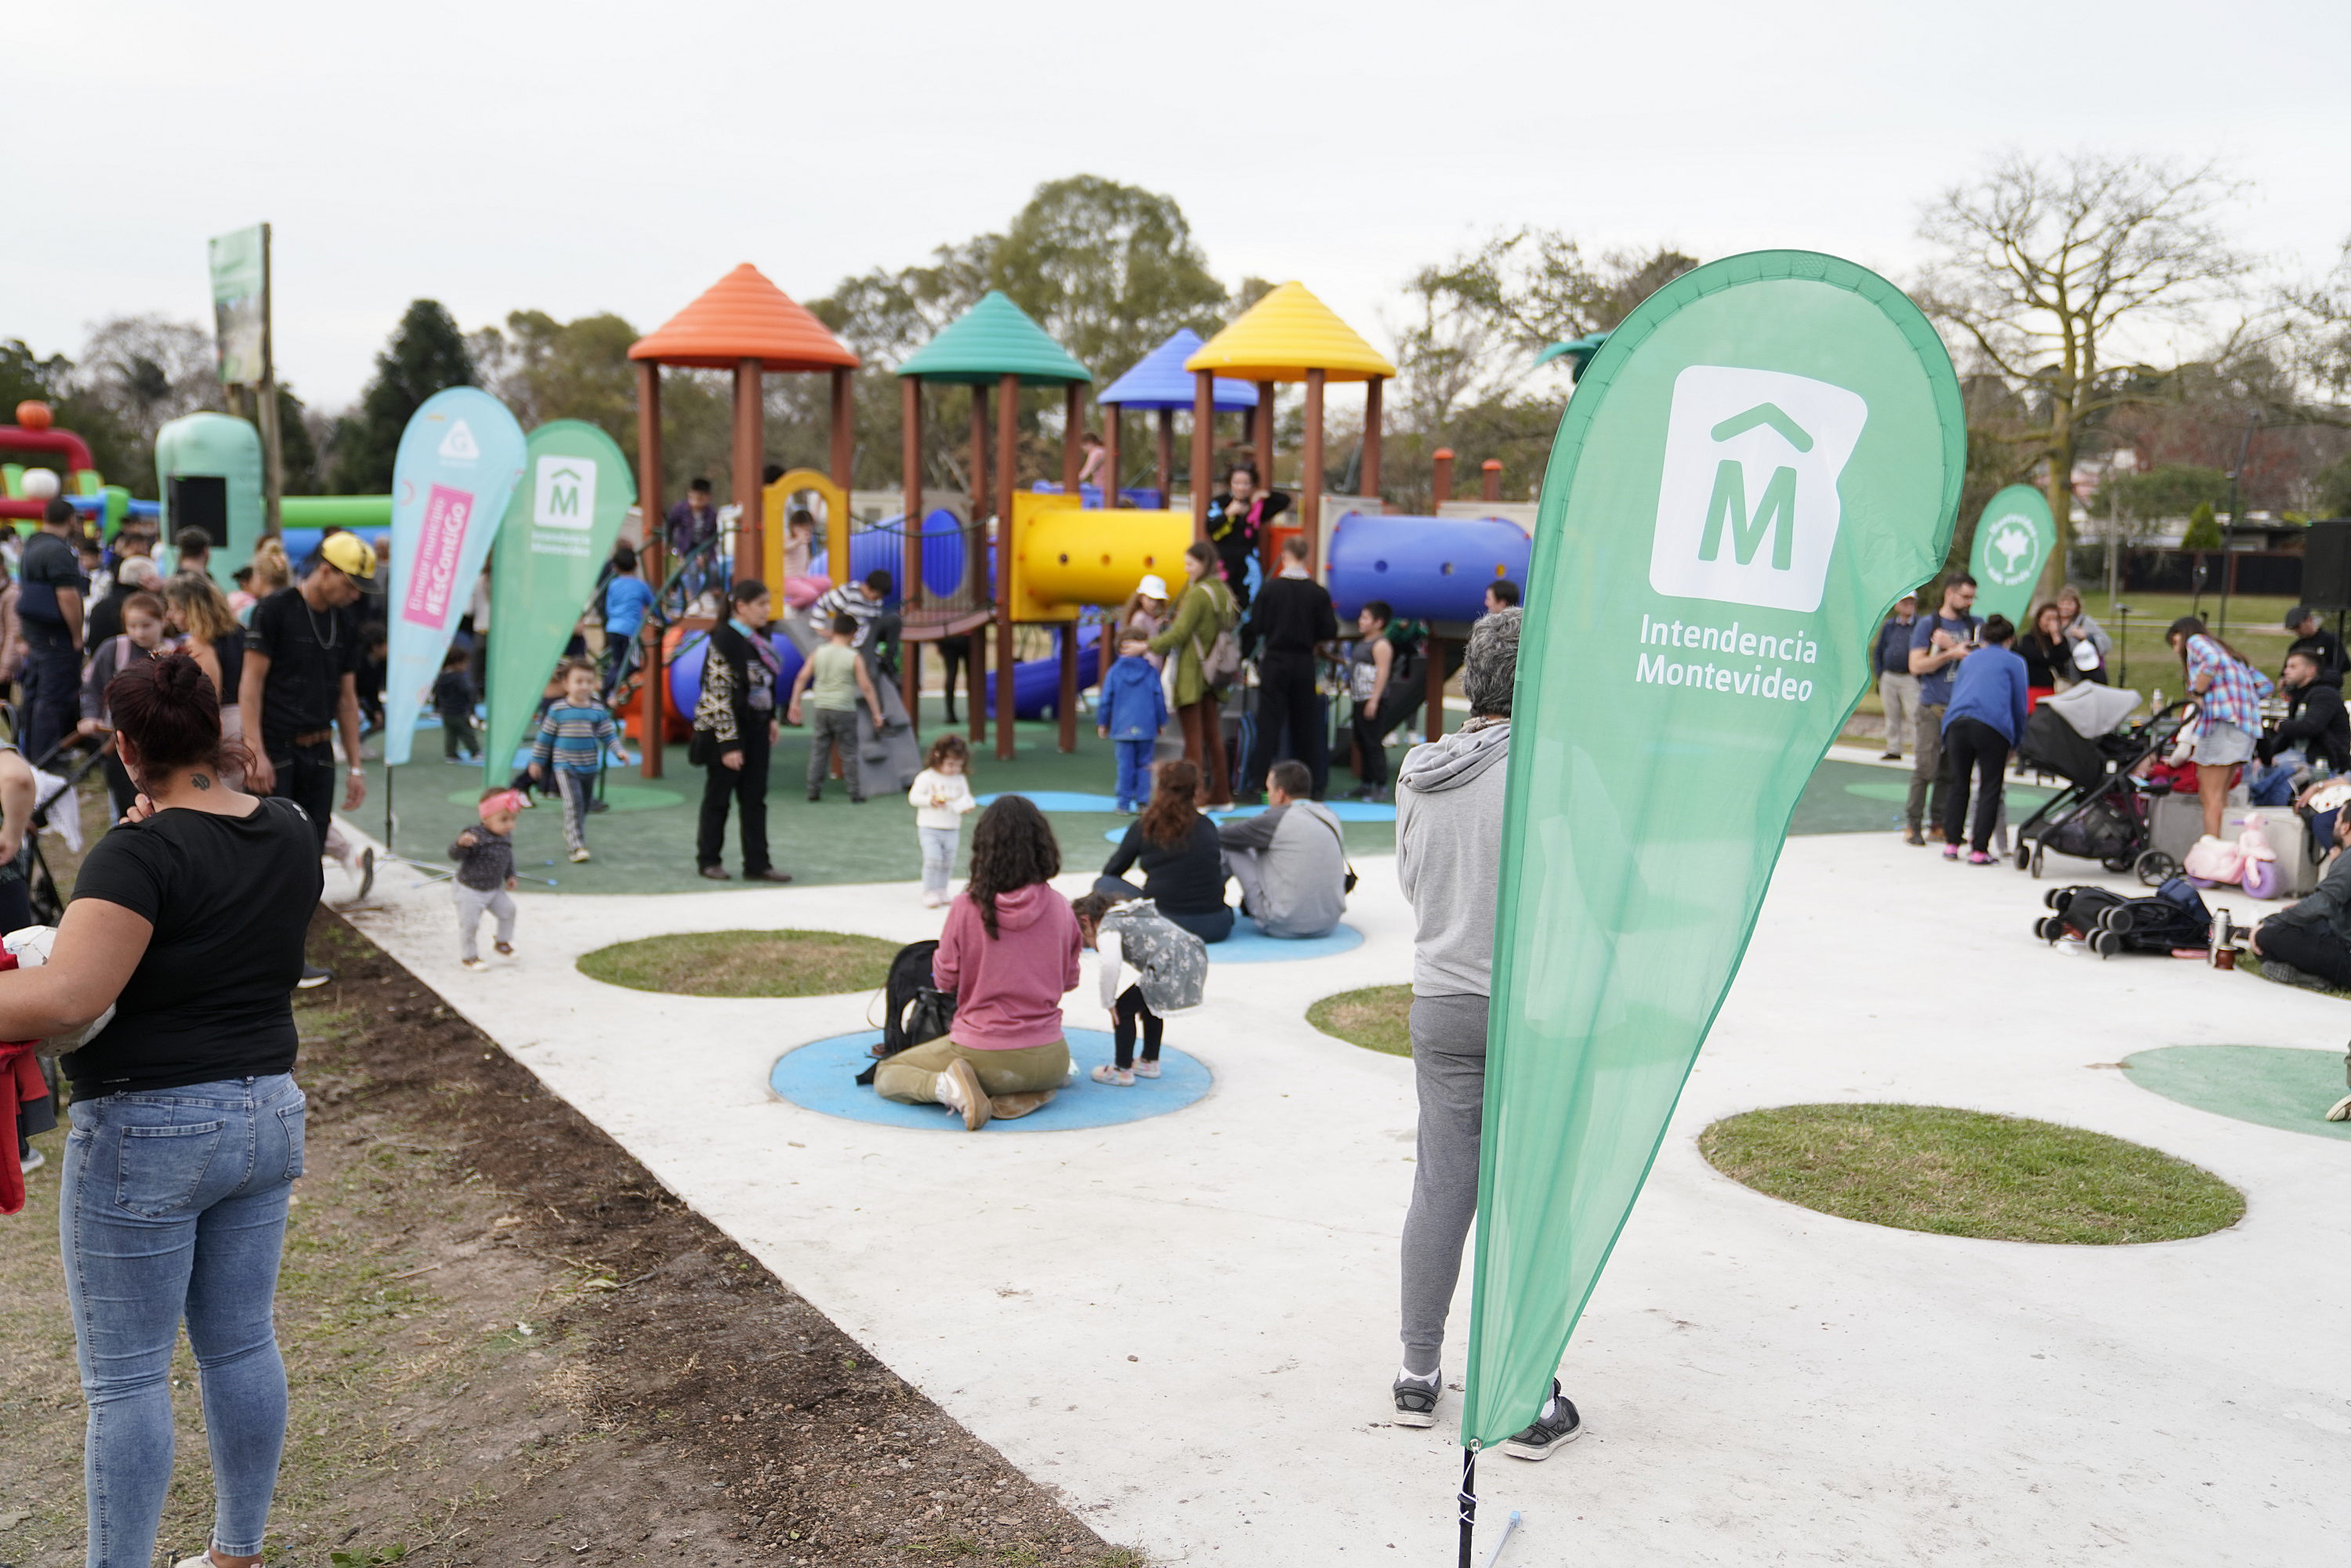 Montevideo avanza en espacios públicos, inauguración de espacio de juegos infantiles en el parque Andalucía